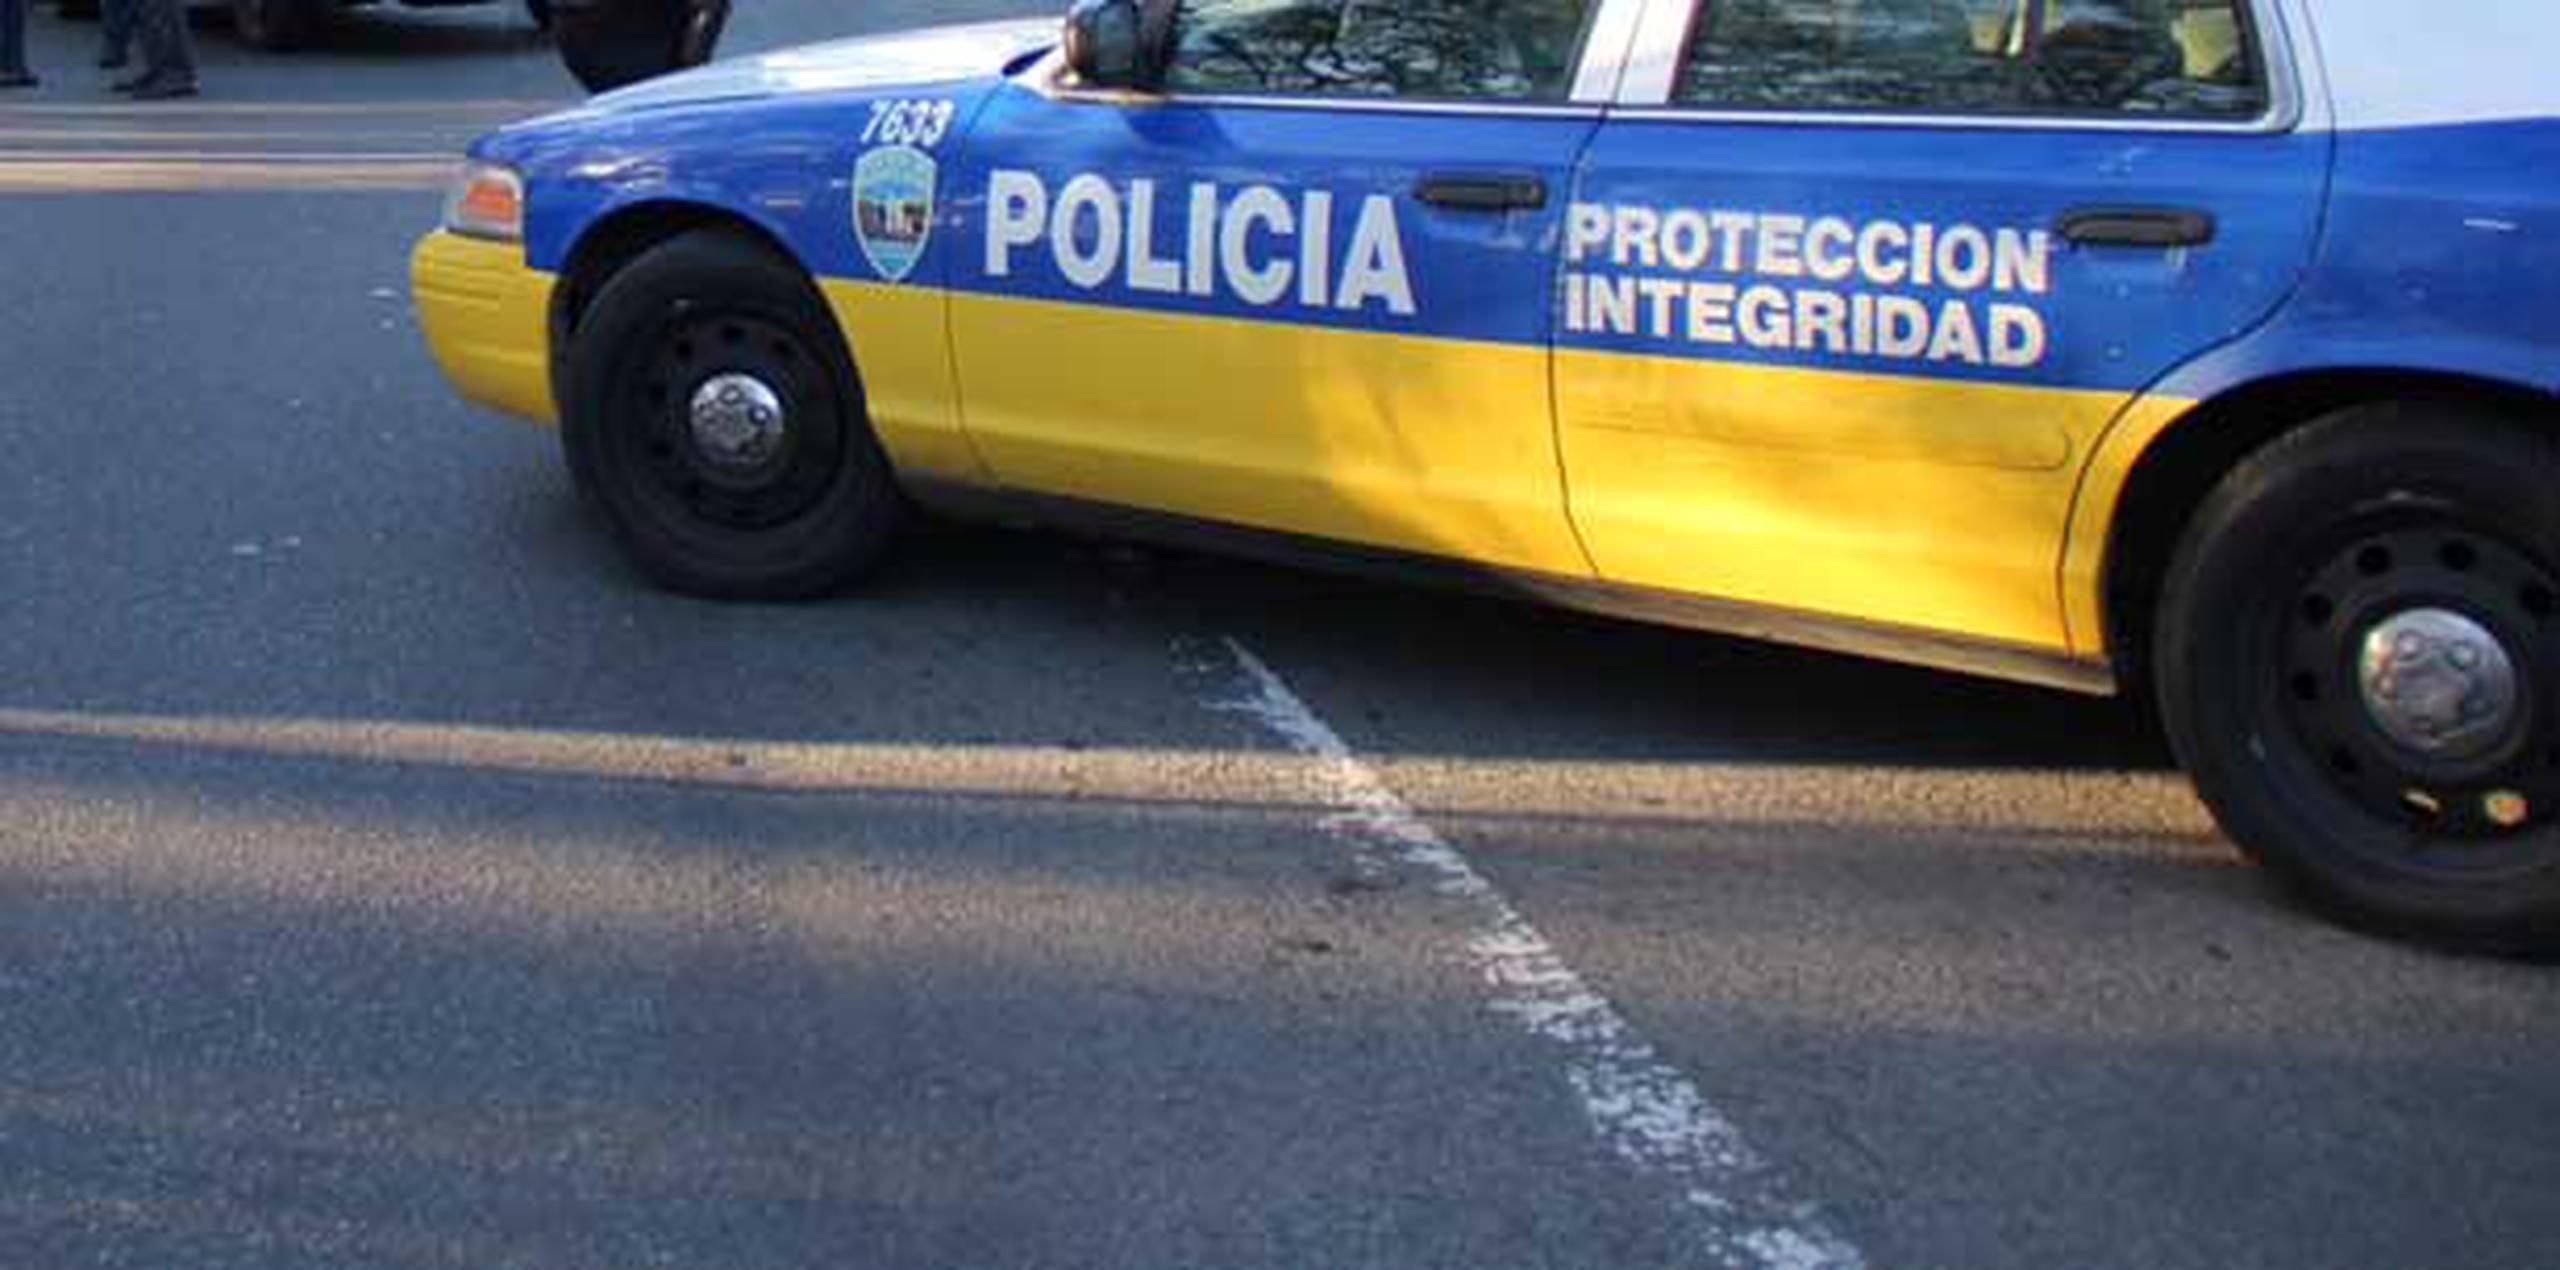 La División de Delitos contra la Propiedad de Barceloneta continuarán con la investigación. (Archivo)